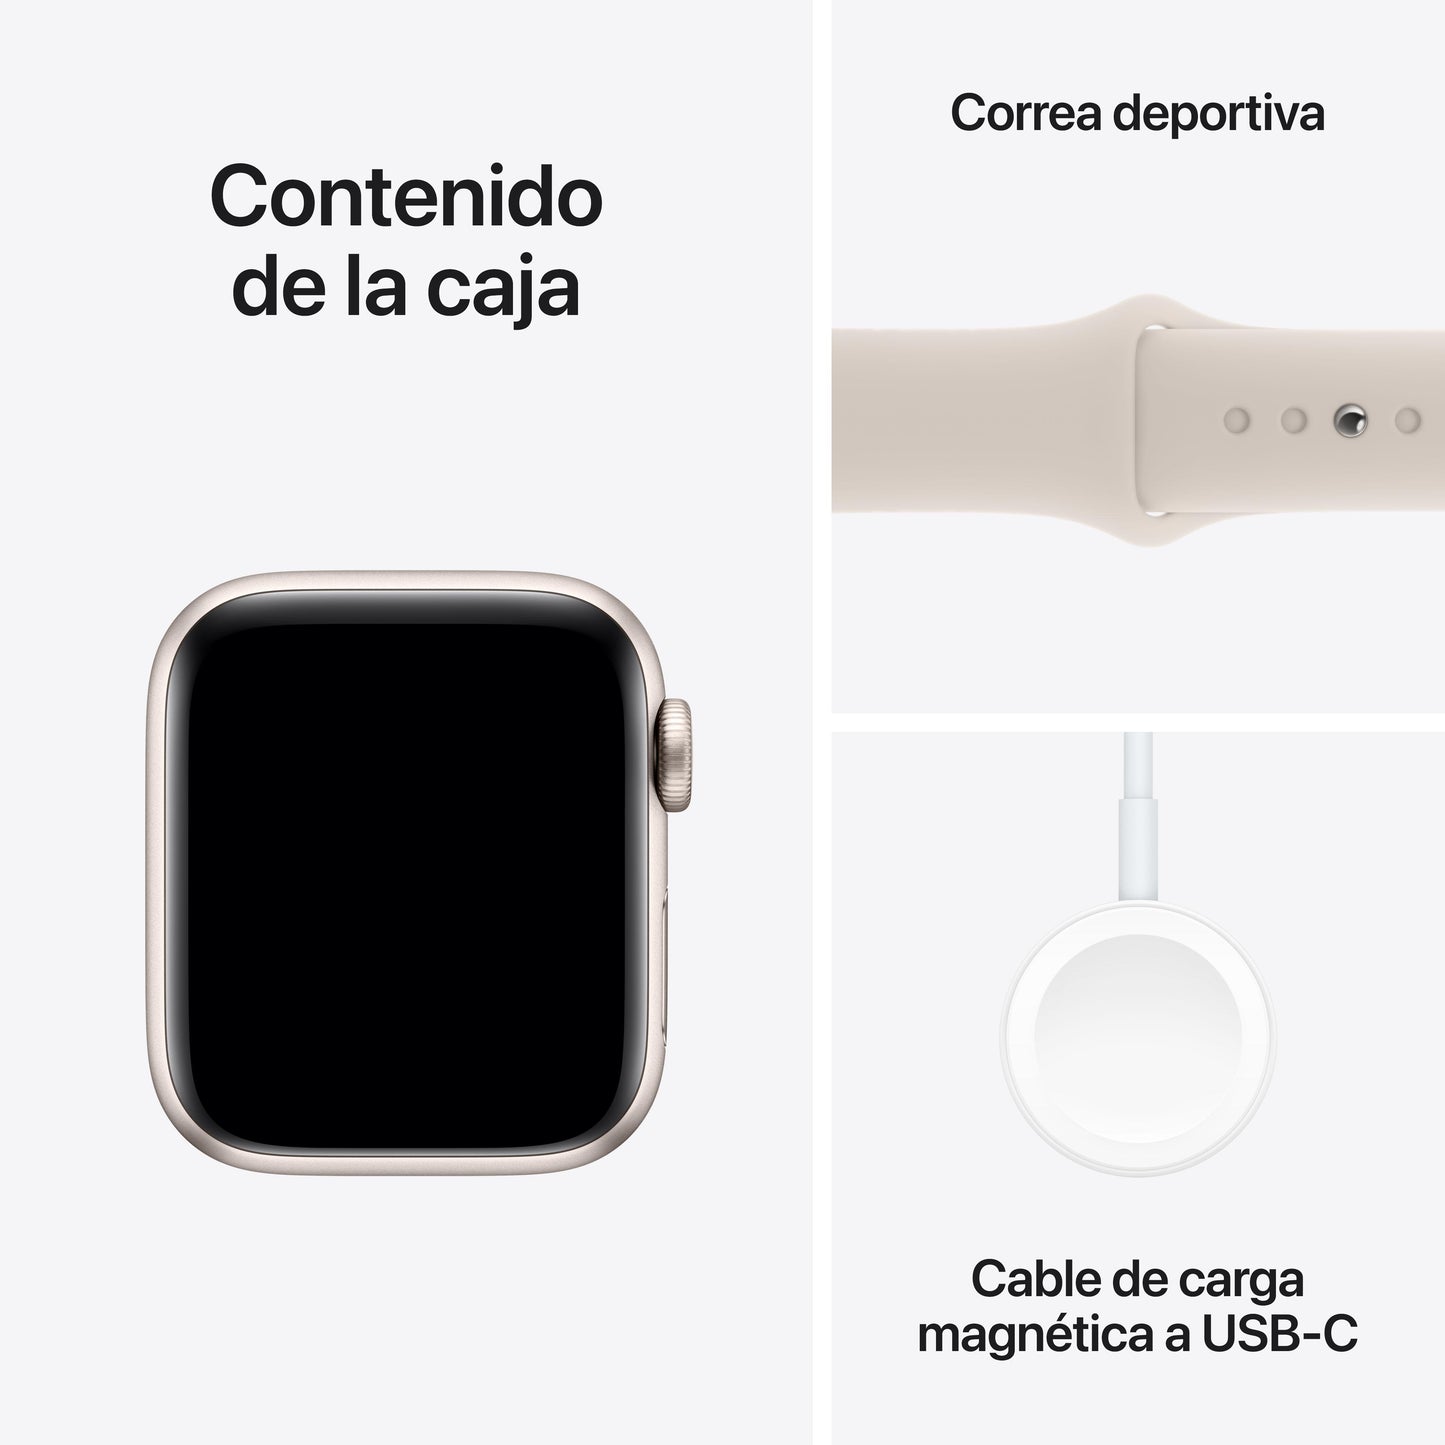 Apple Watch SE (GPS + Cellular) - Caja de aluminio en blanco estrella de 40 mm - Correa deportiva blanco estrella - Talla M/L